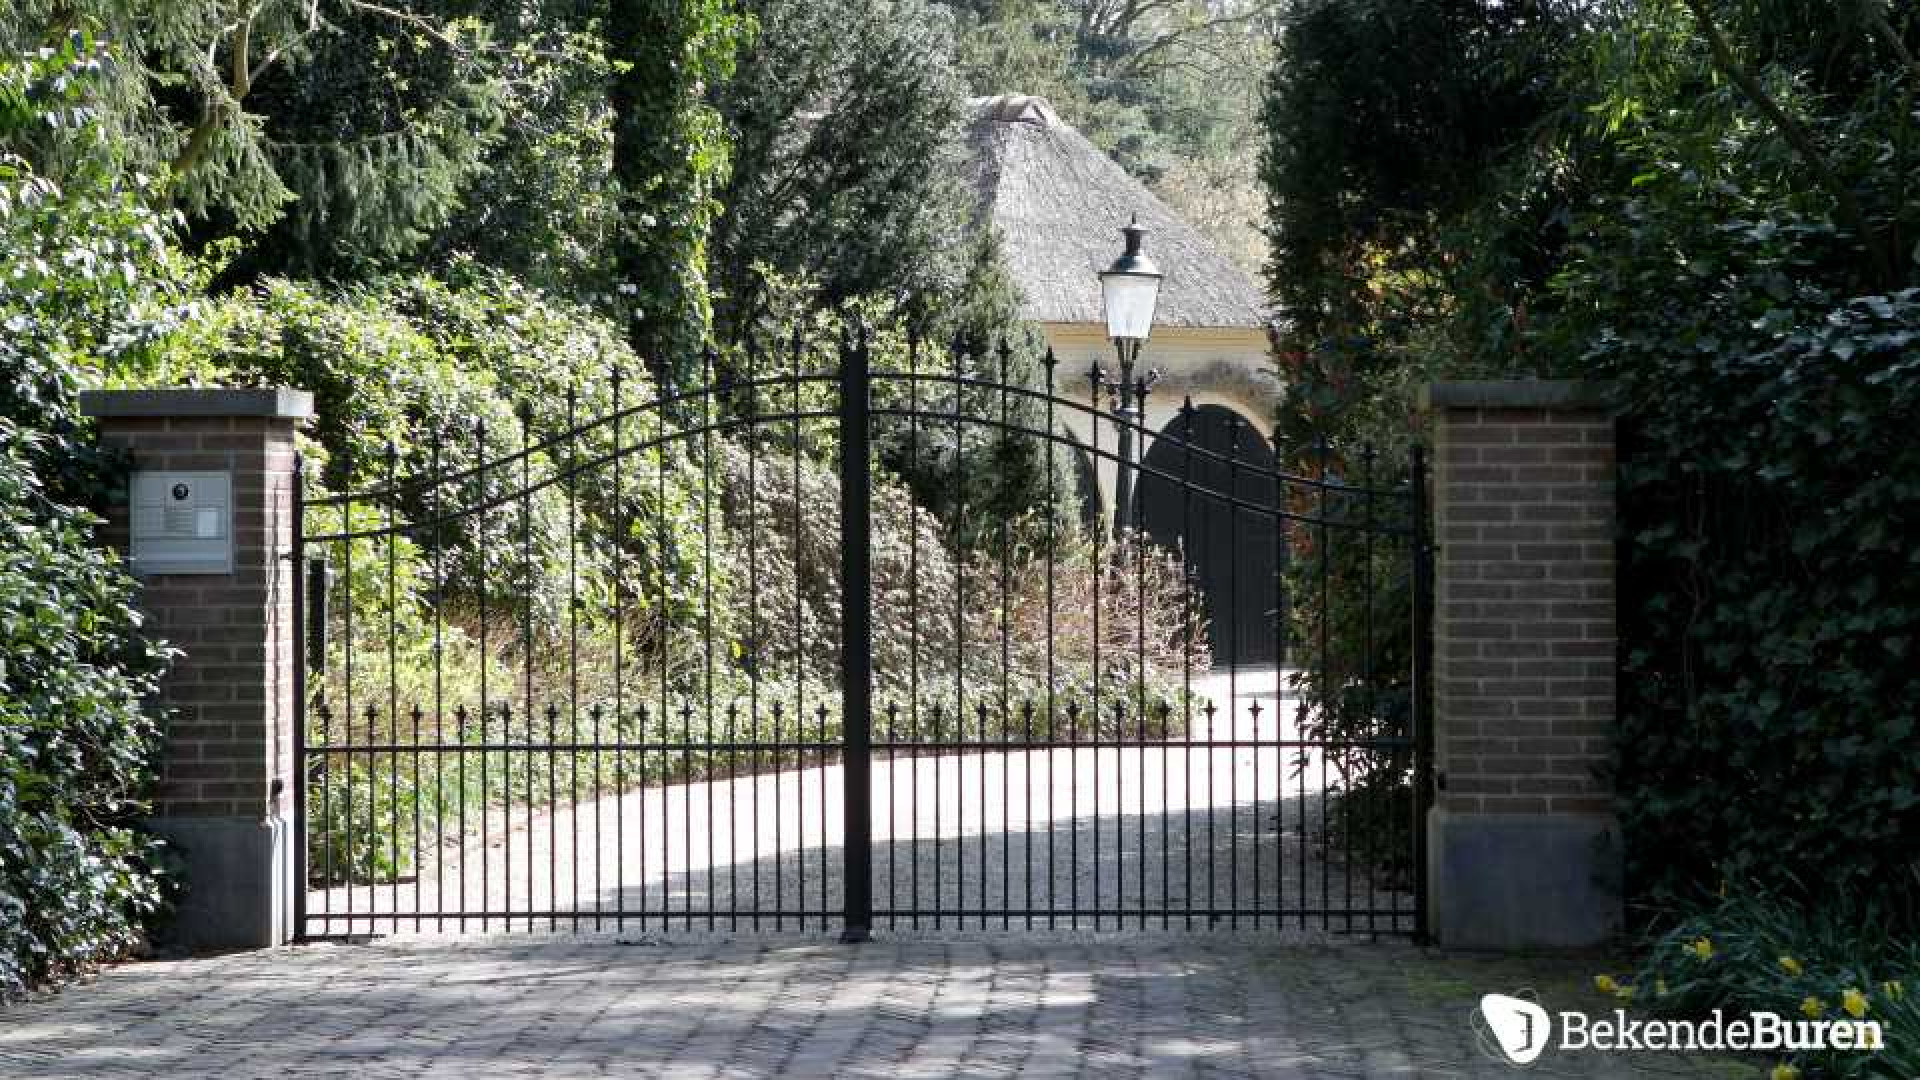 Prinses Irene koopt kapitale villa in Doorn. Zie foto's 1